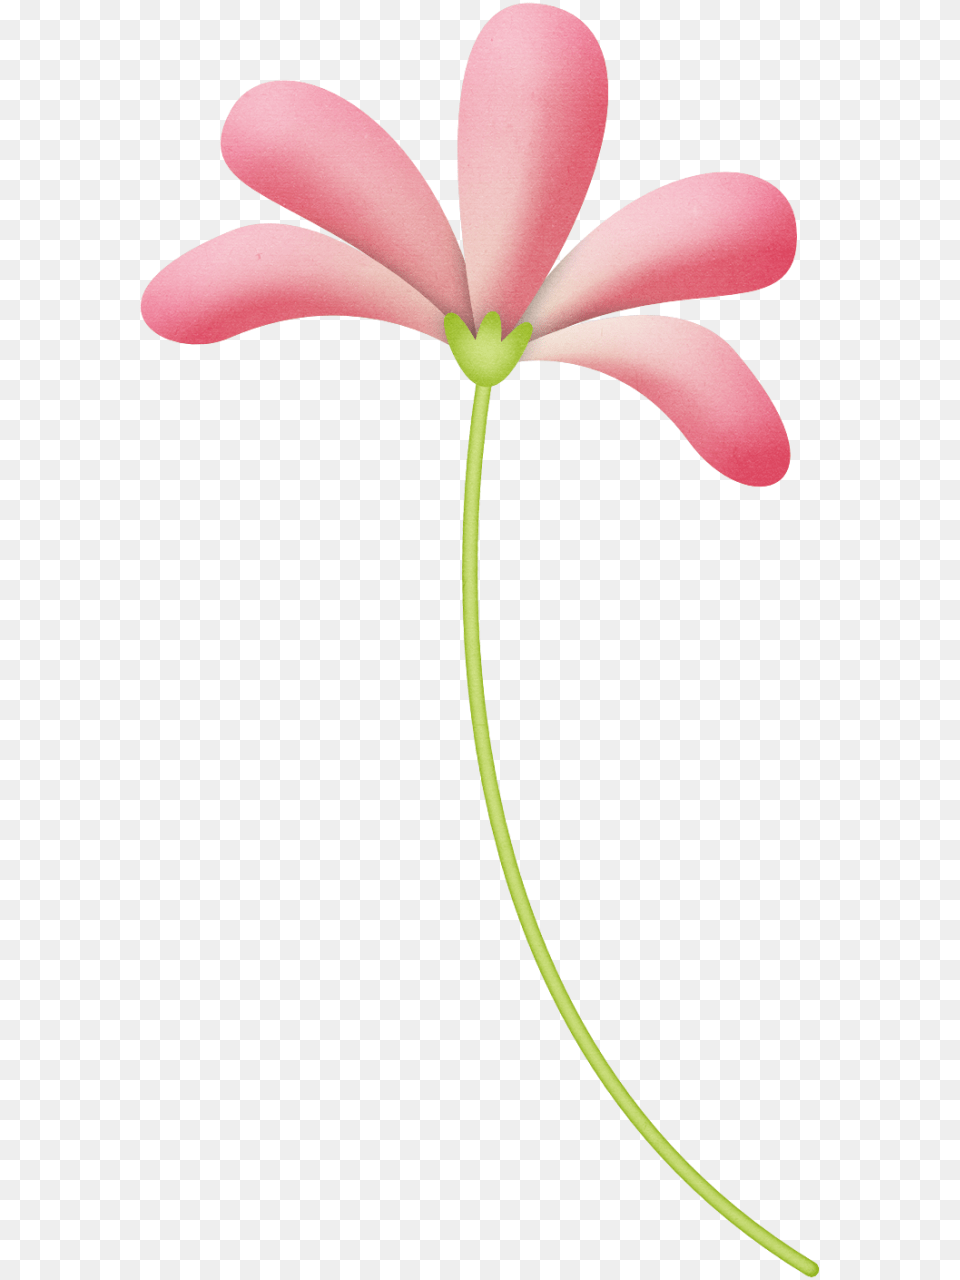 Flower Printable Flowers Flower Clipart, Petal, Plant, Geranium Png Image